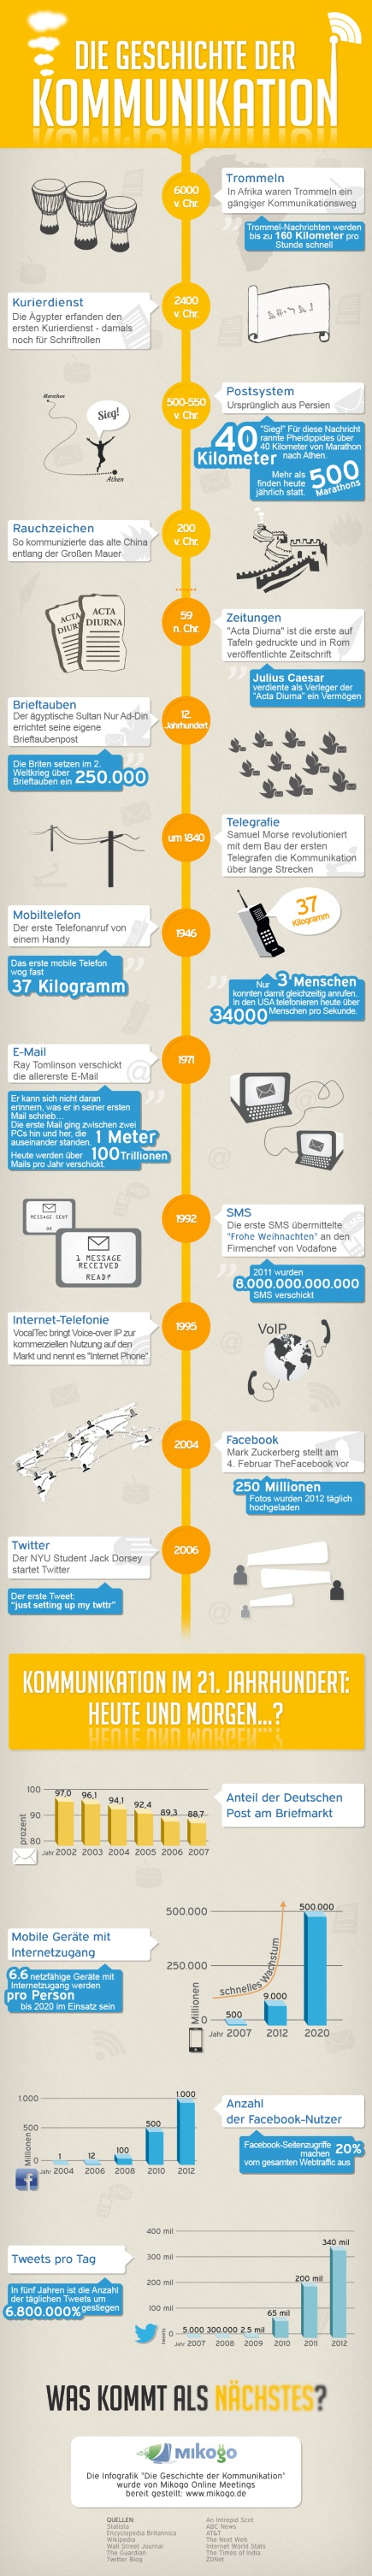 Infografik "Die Geschichte der Kommunikation"